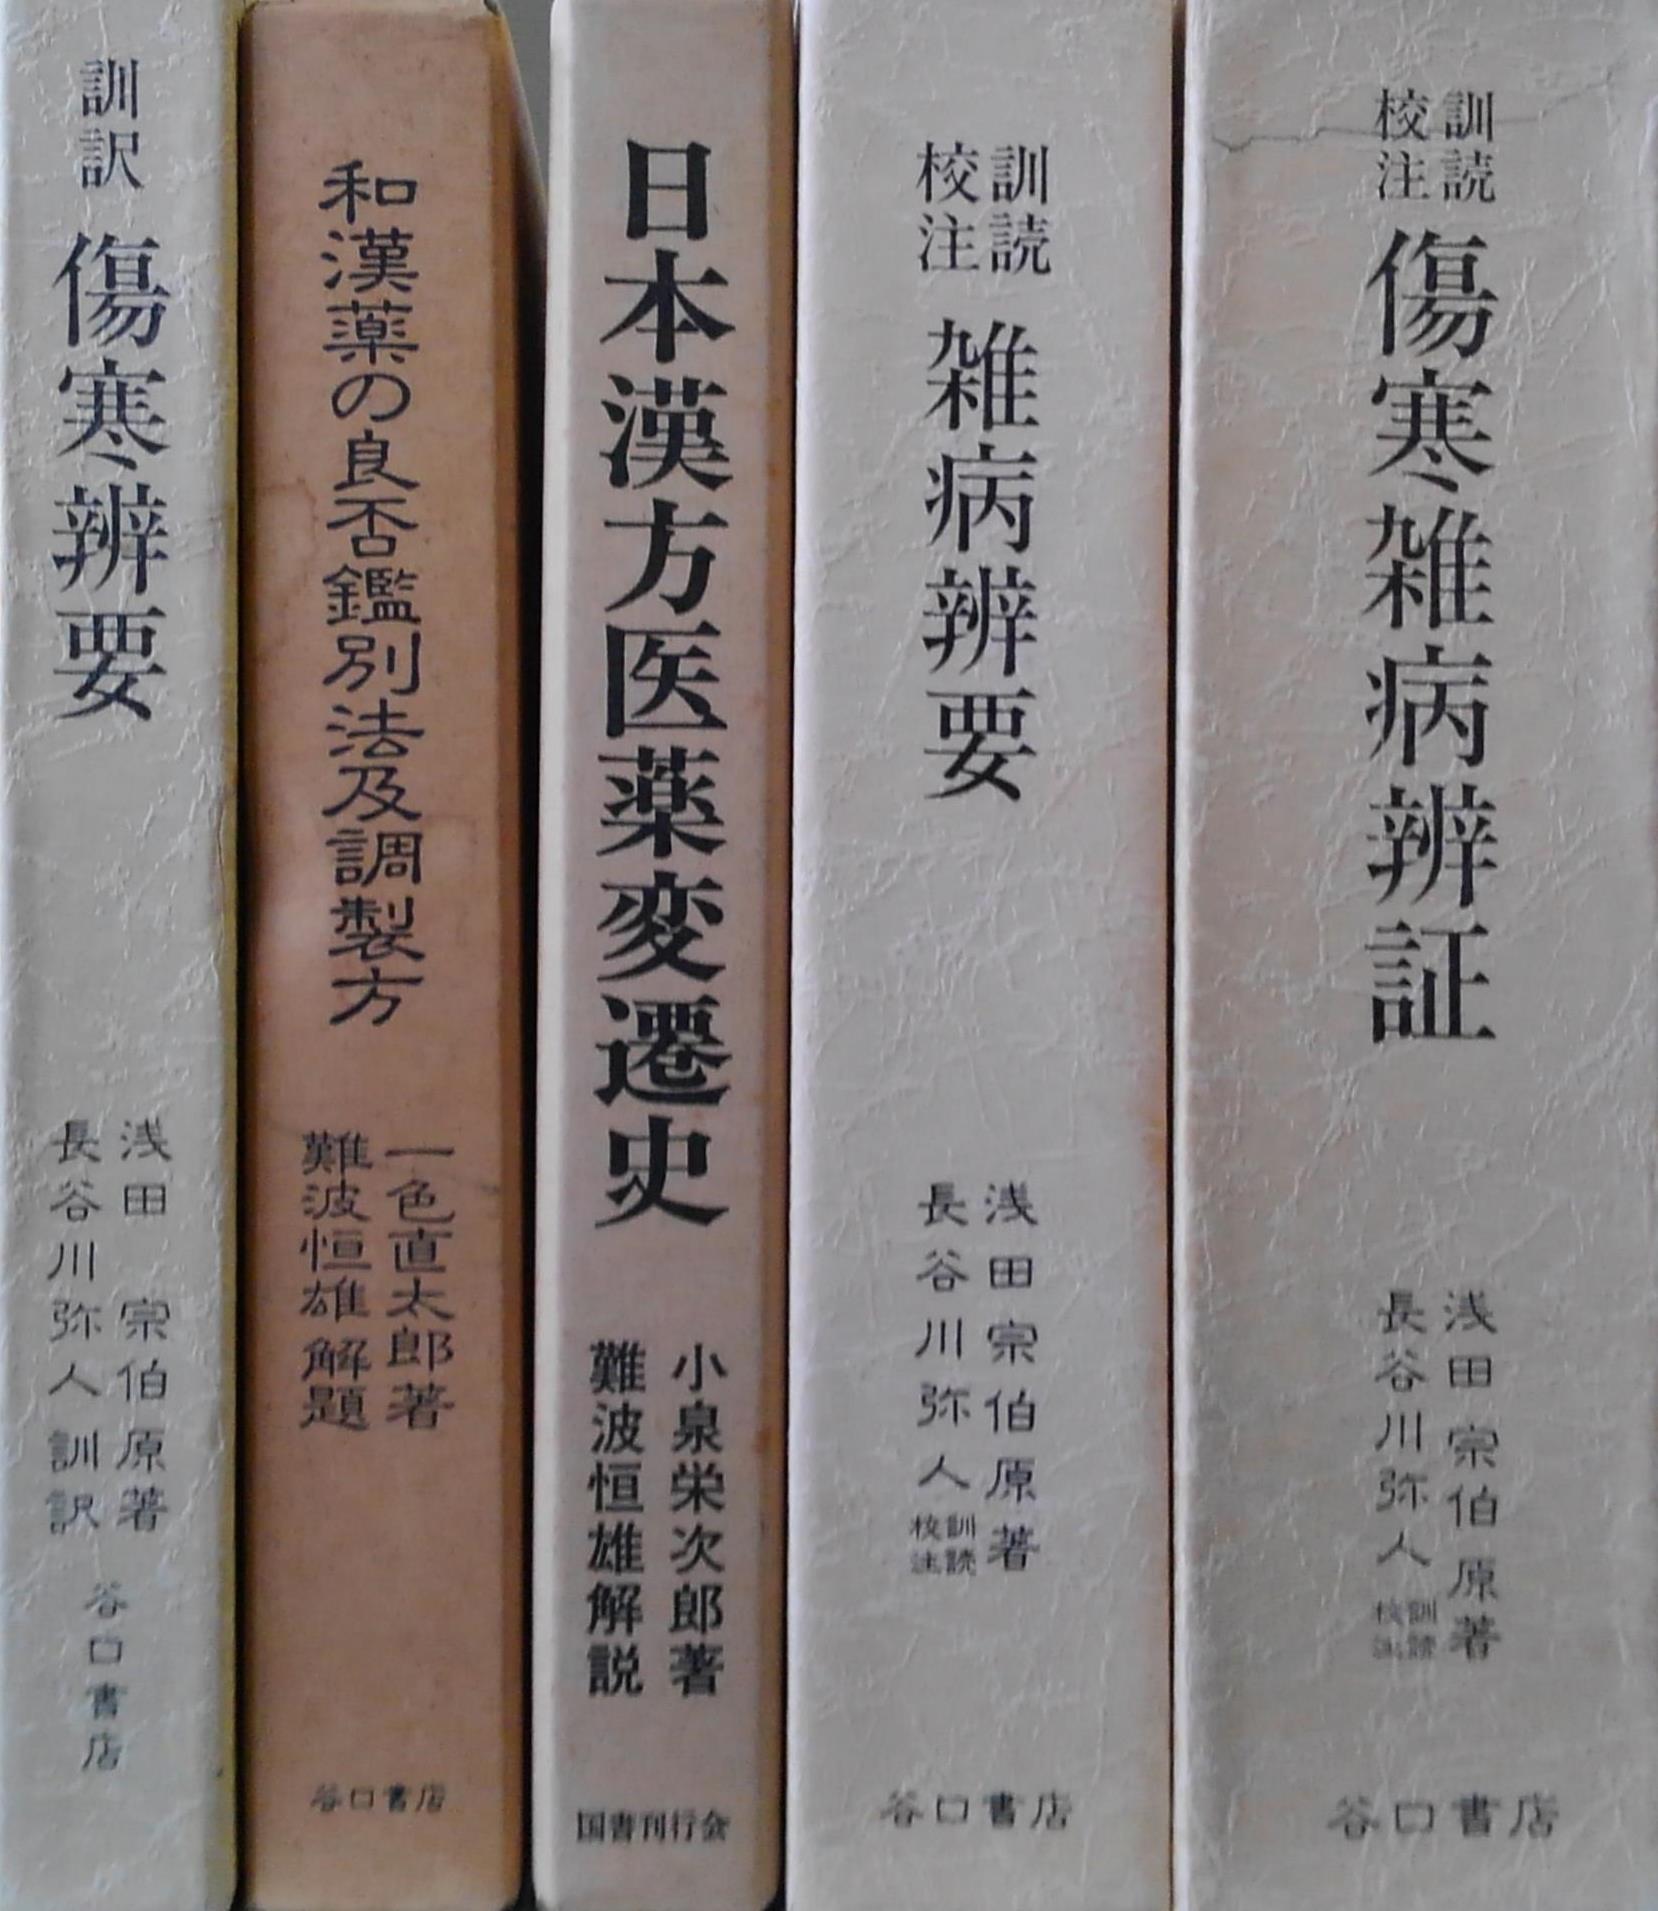 和刻 漢籍医書集成』など東洋医学関係の古書を出張買取致しました